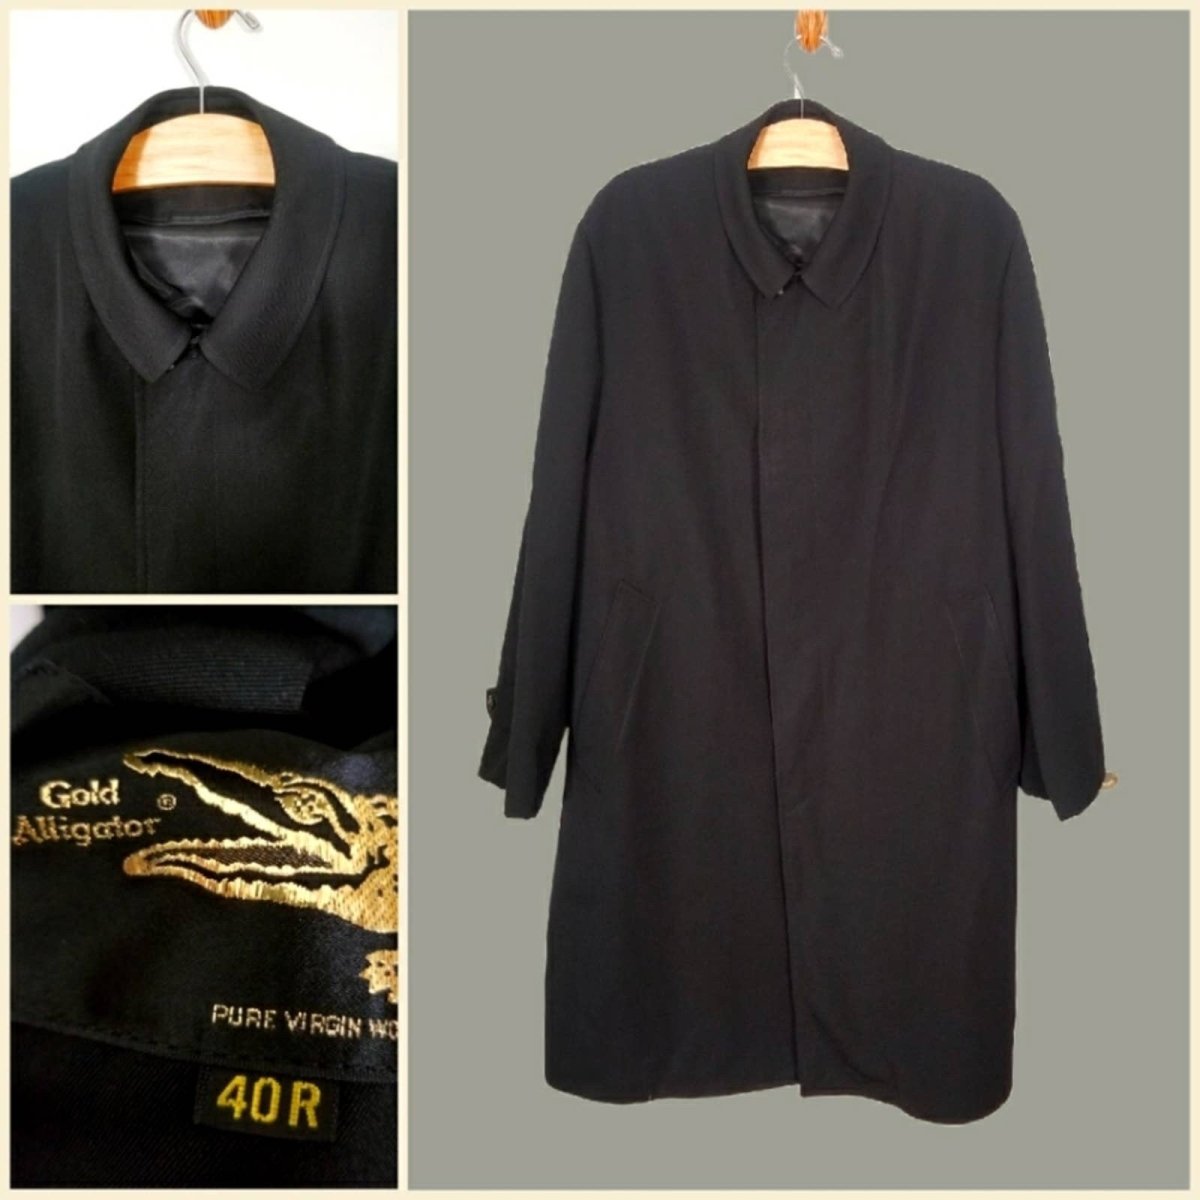 Vintage 60s Black Wool Overcoat 40R - themallvintage The Mall Vintage